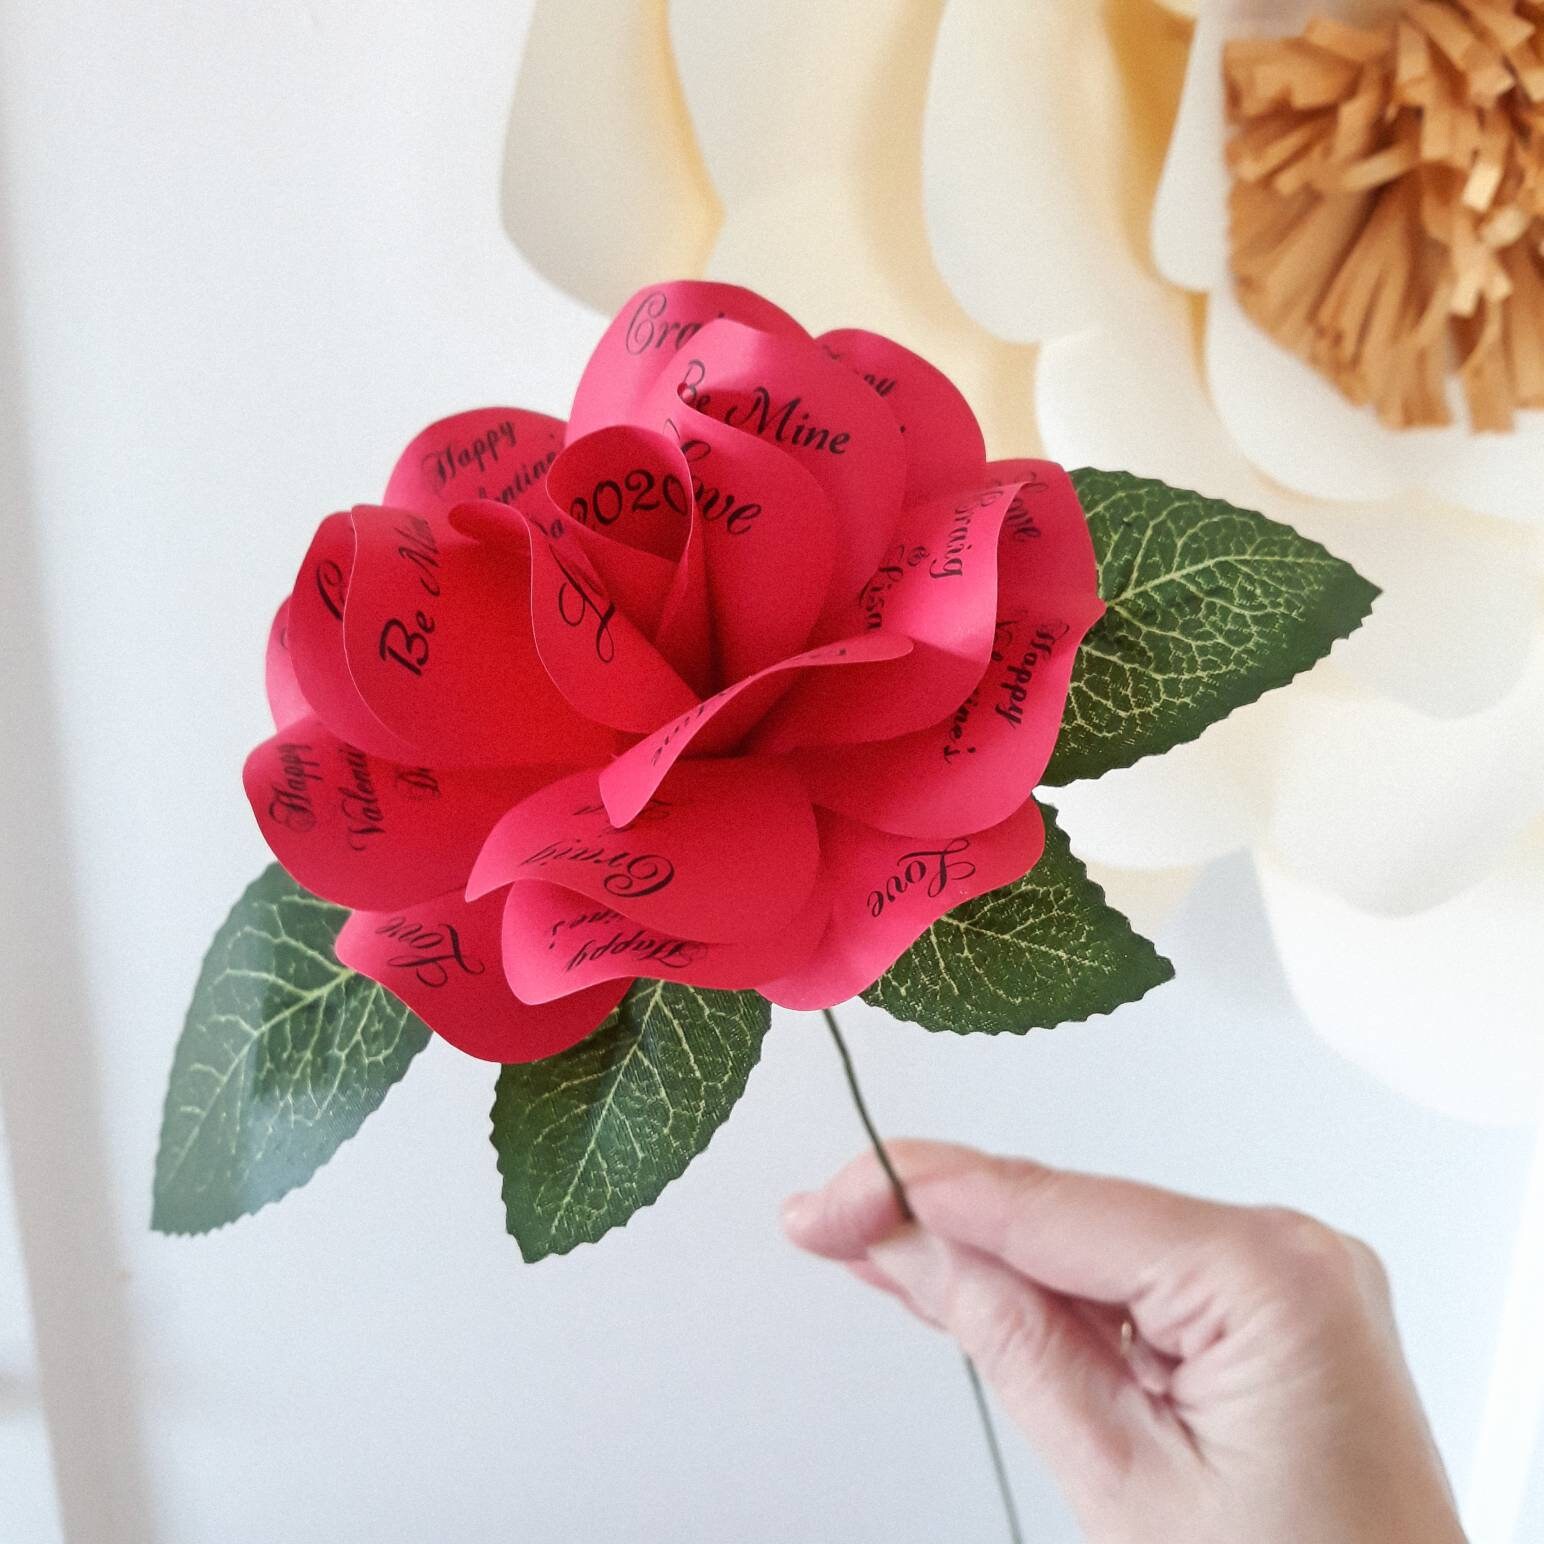 Single Paper Rose, Paper Roses, Gift for Her, Everlasting Flowers,  Alternative Valentine, Long Stem Rose, Red Rose, Birthday Gift 